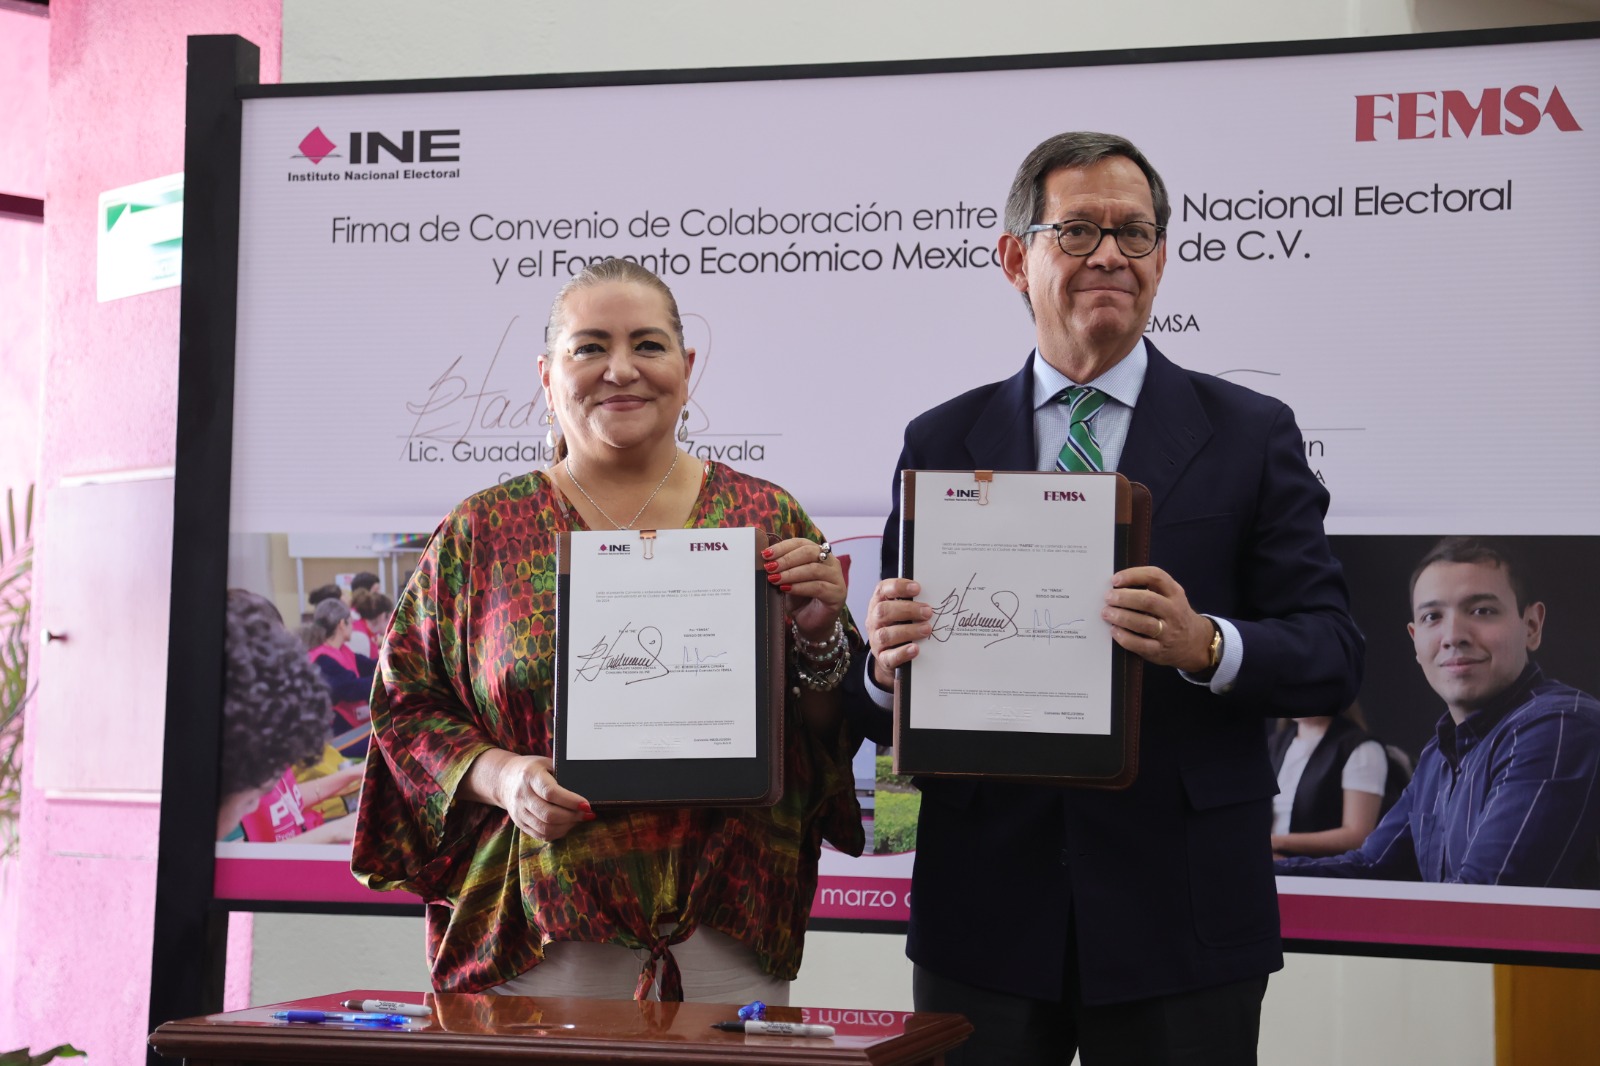 INE, FEMSA y OXXO Unen Esfuerzos para Fortalecer la Democracia en México